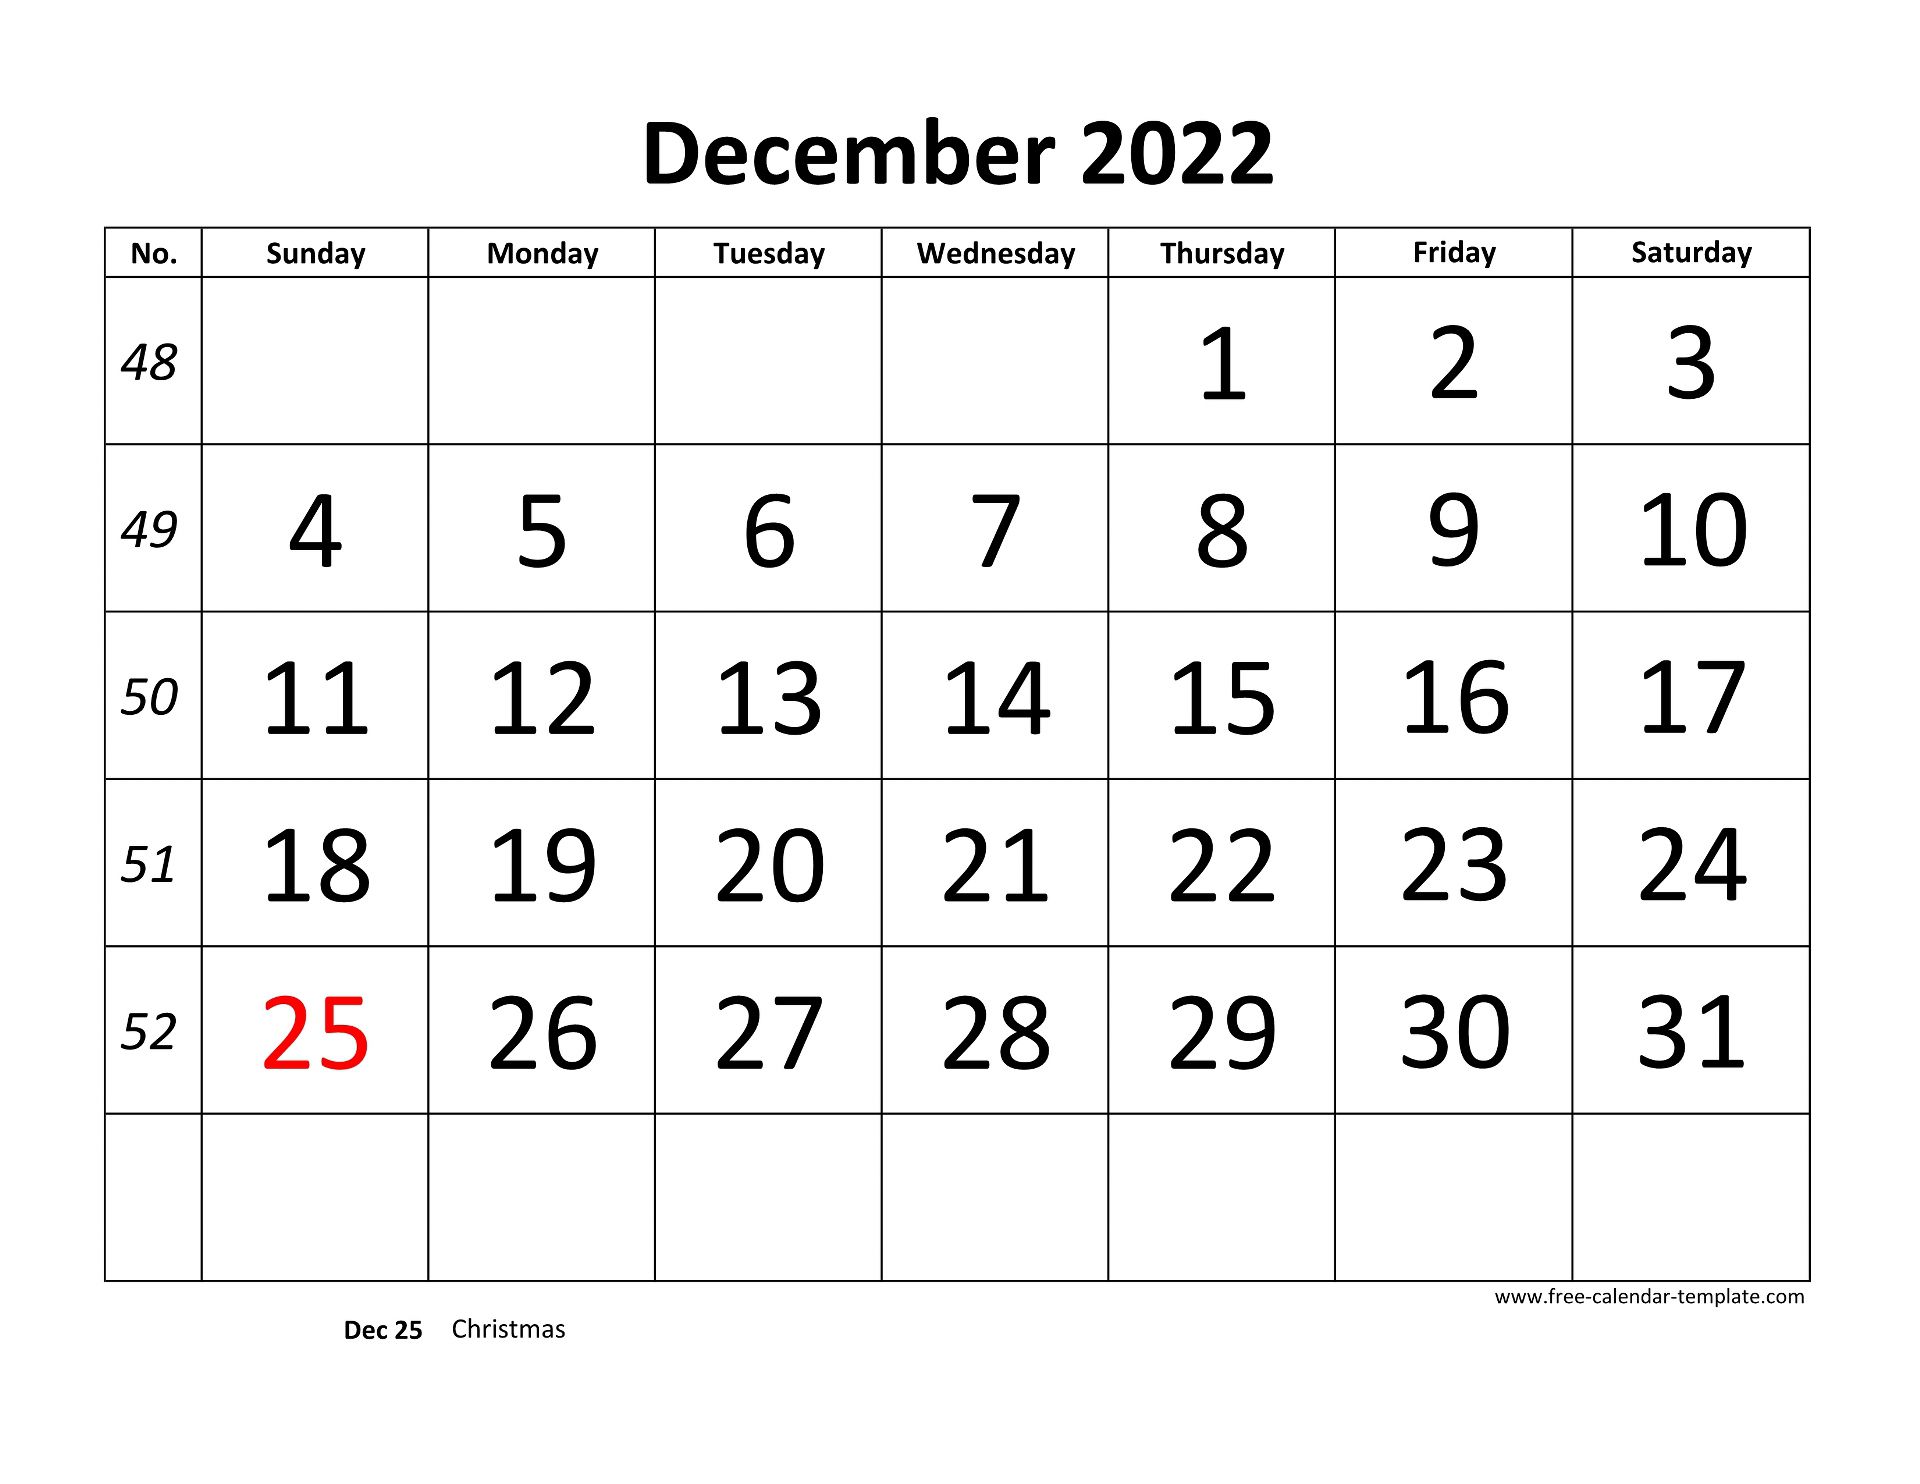 December 2022 Free Calendar Tempplate Free calendar template